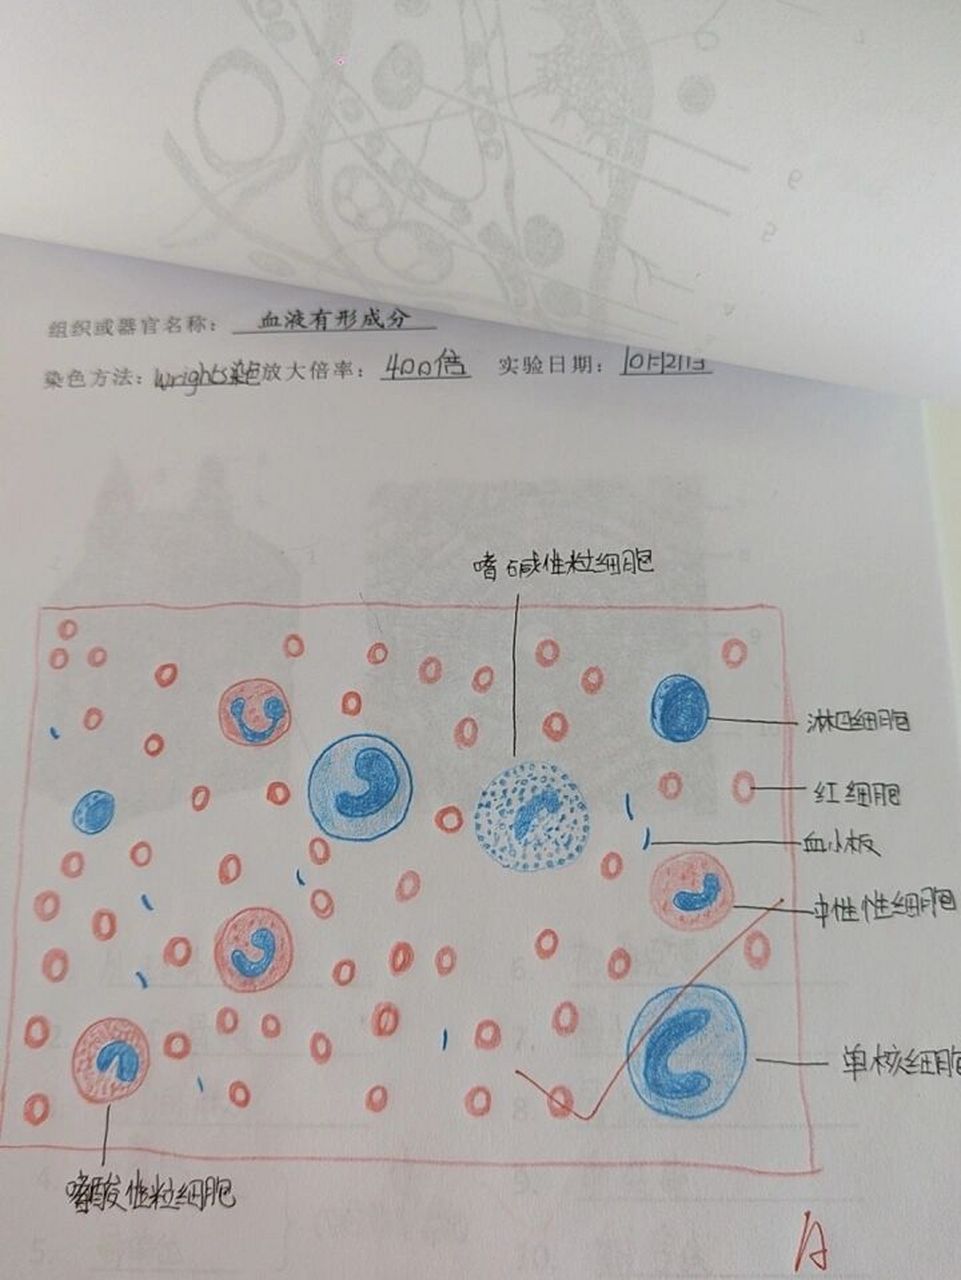 浆细胞红蓝铅笔绘图图片